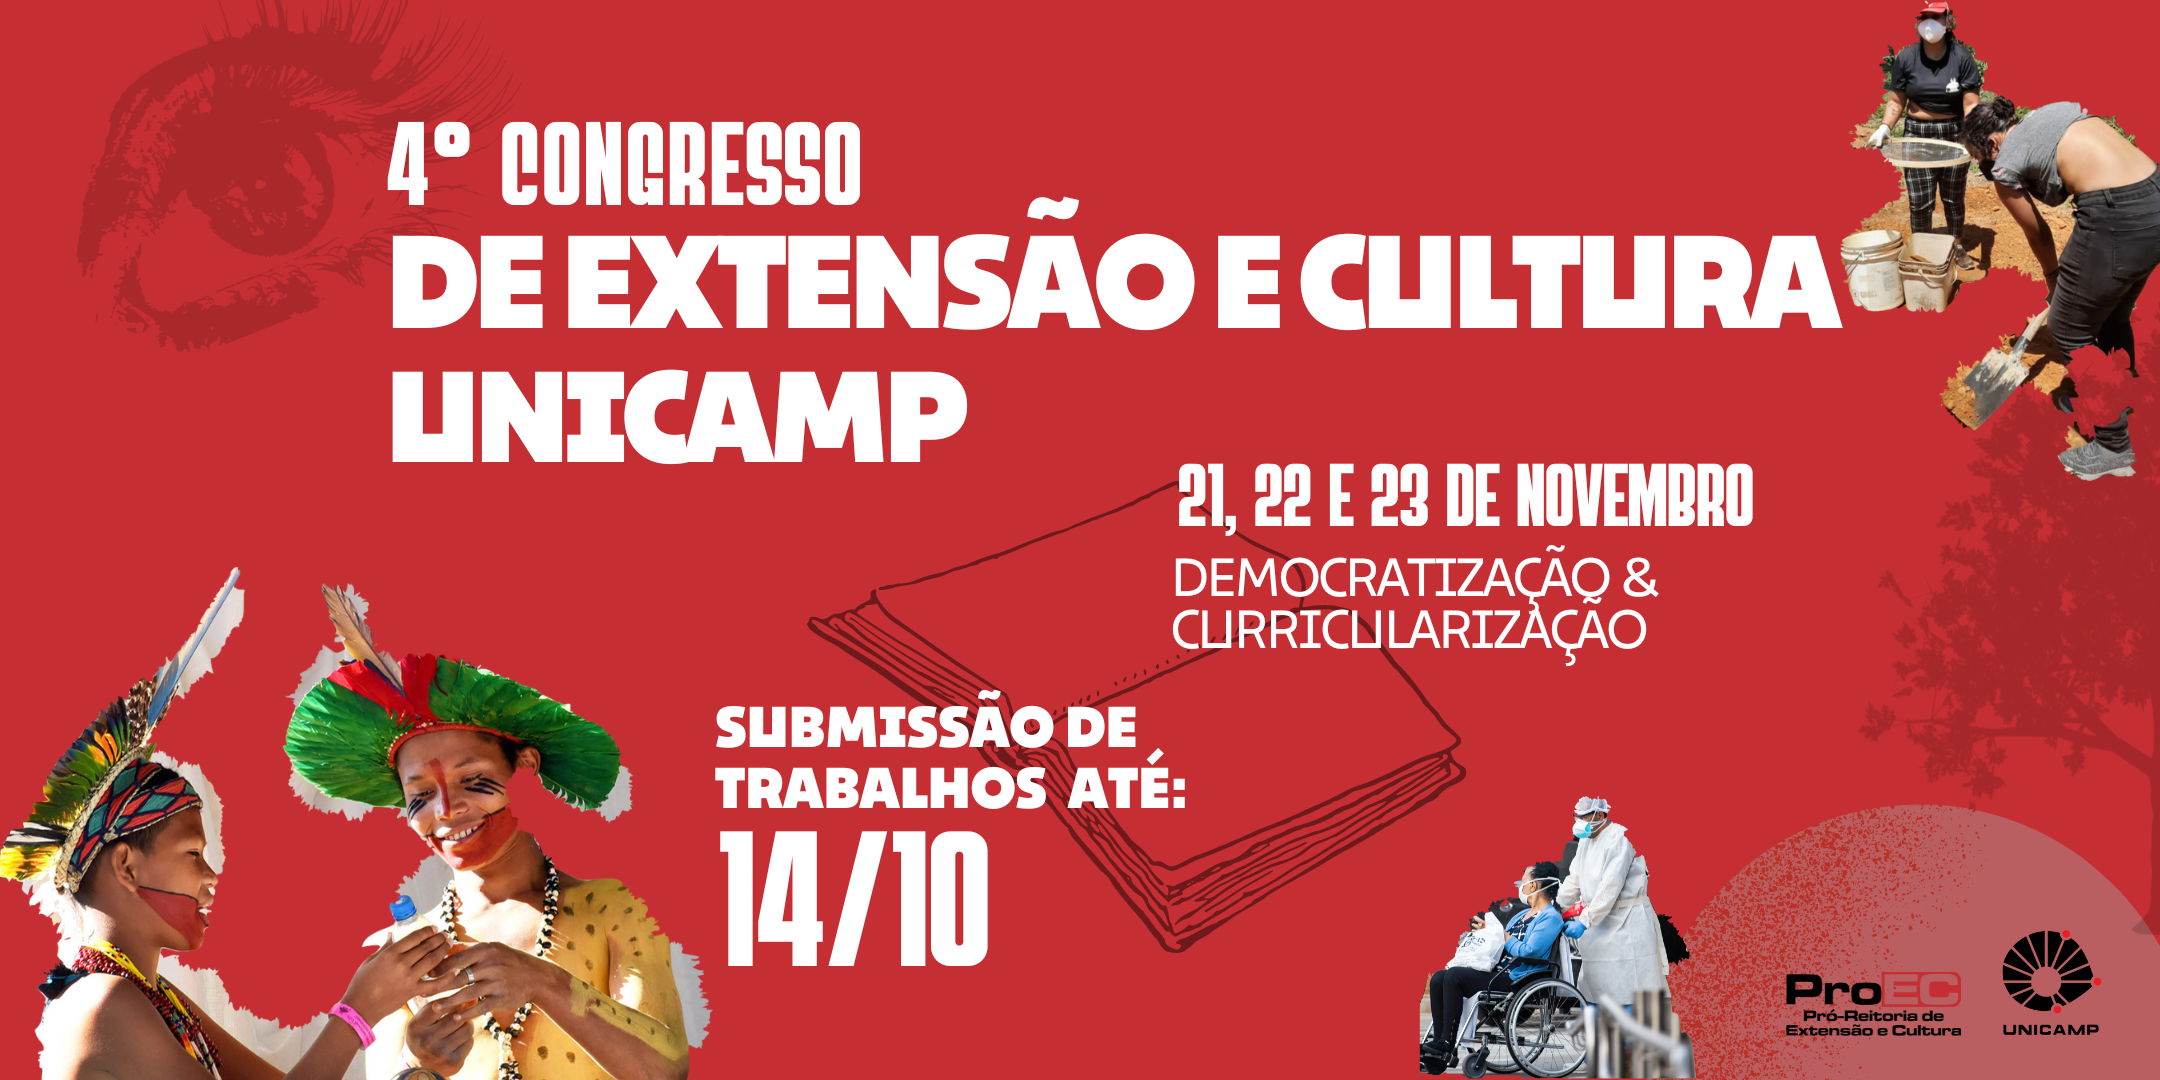 4º Congresso de Extensão e Cultura da Unicamp